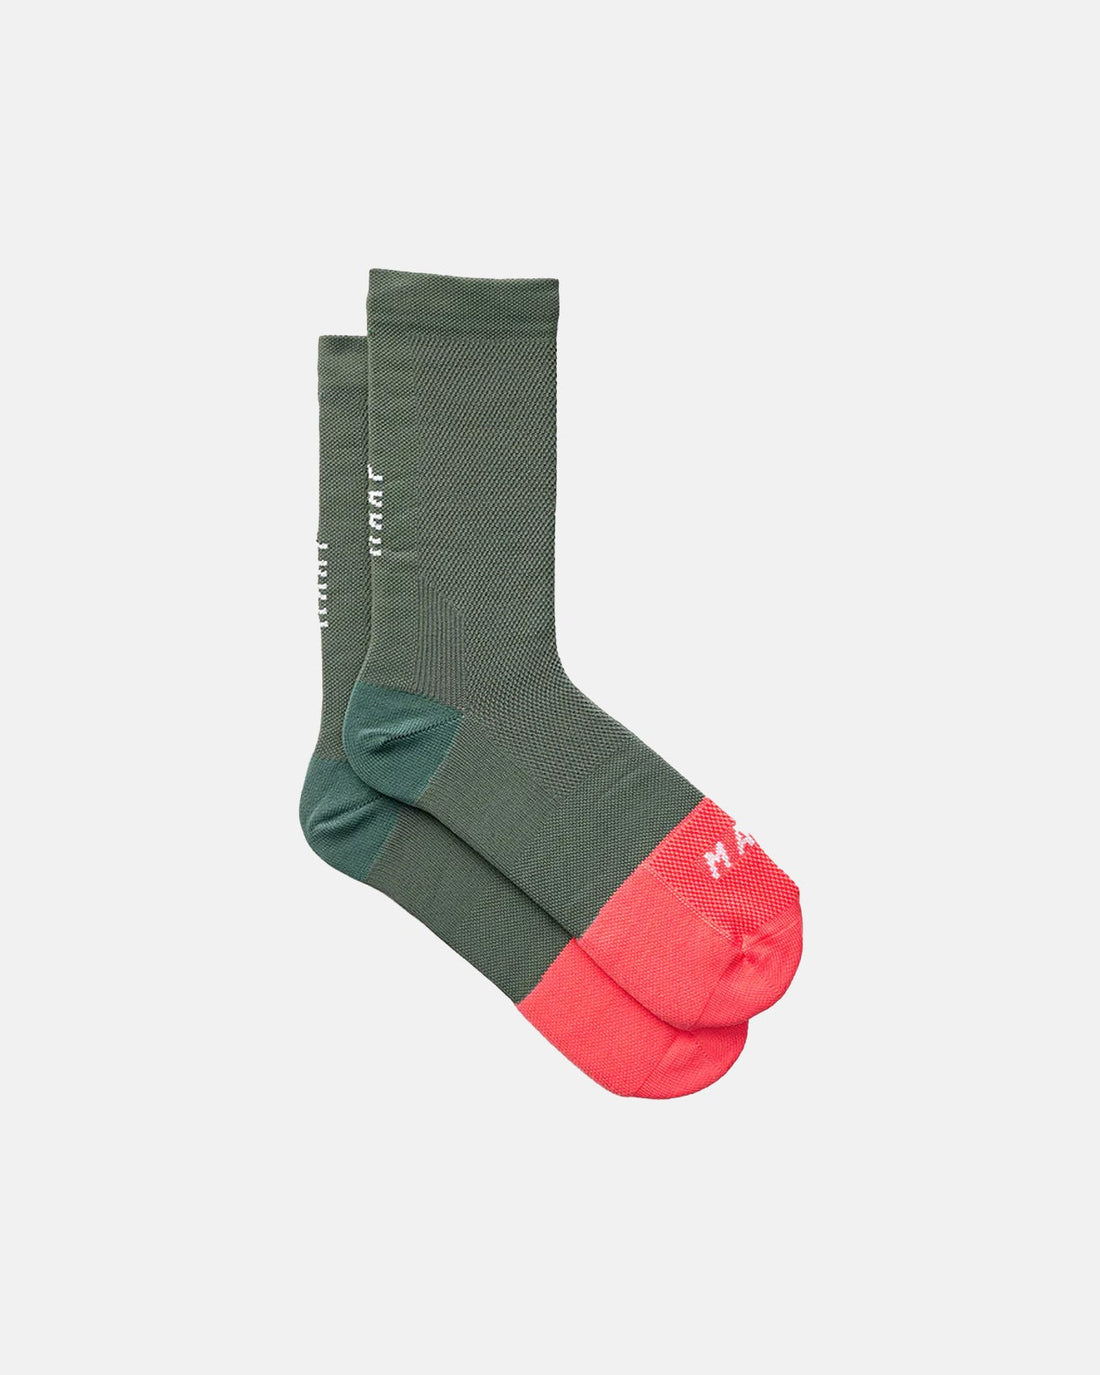 MAAP Division Sock - Artichoke